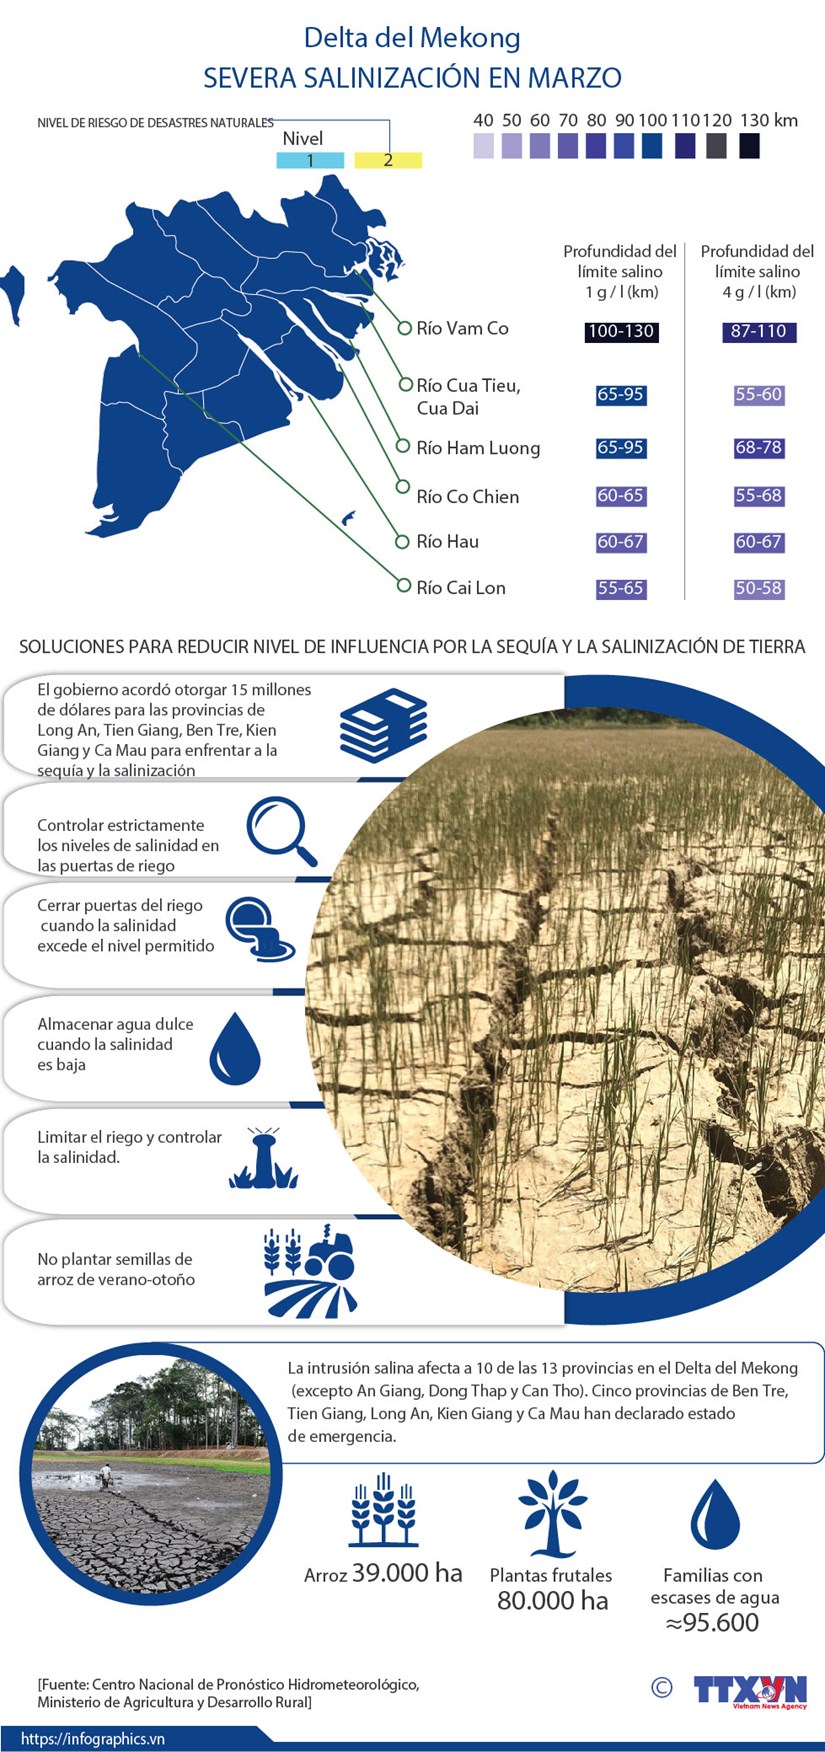 [Info] Delta del Mekong enfrenta su peor salinizacion en marzo hinh anh 1